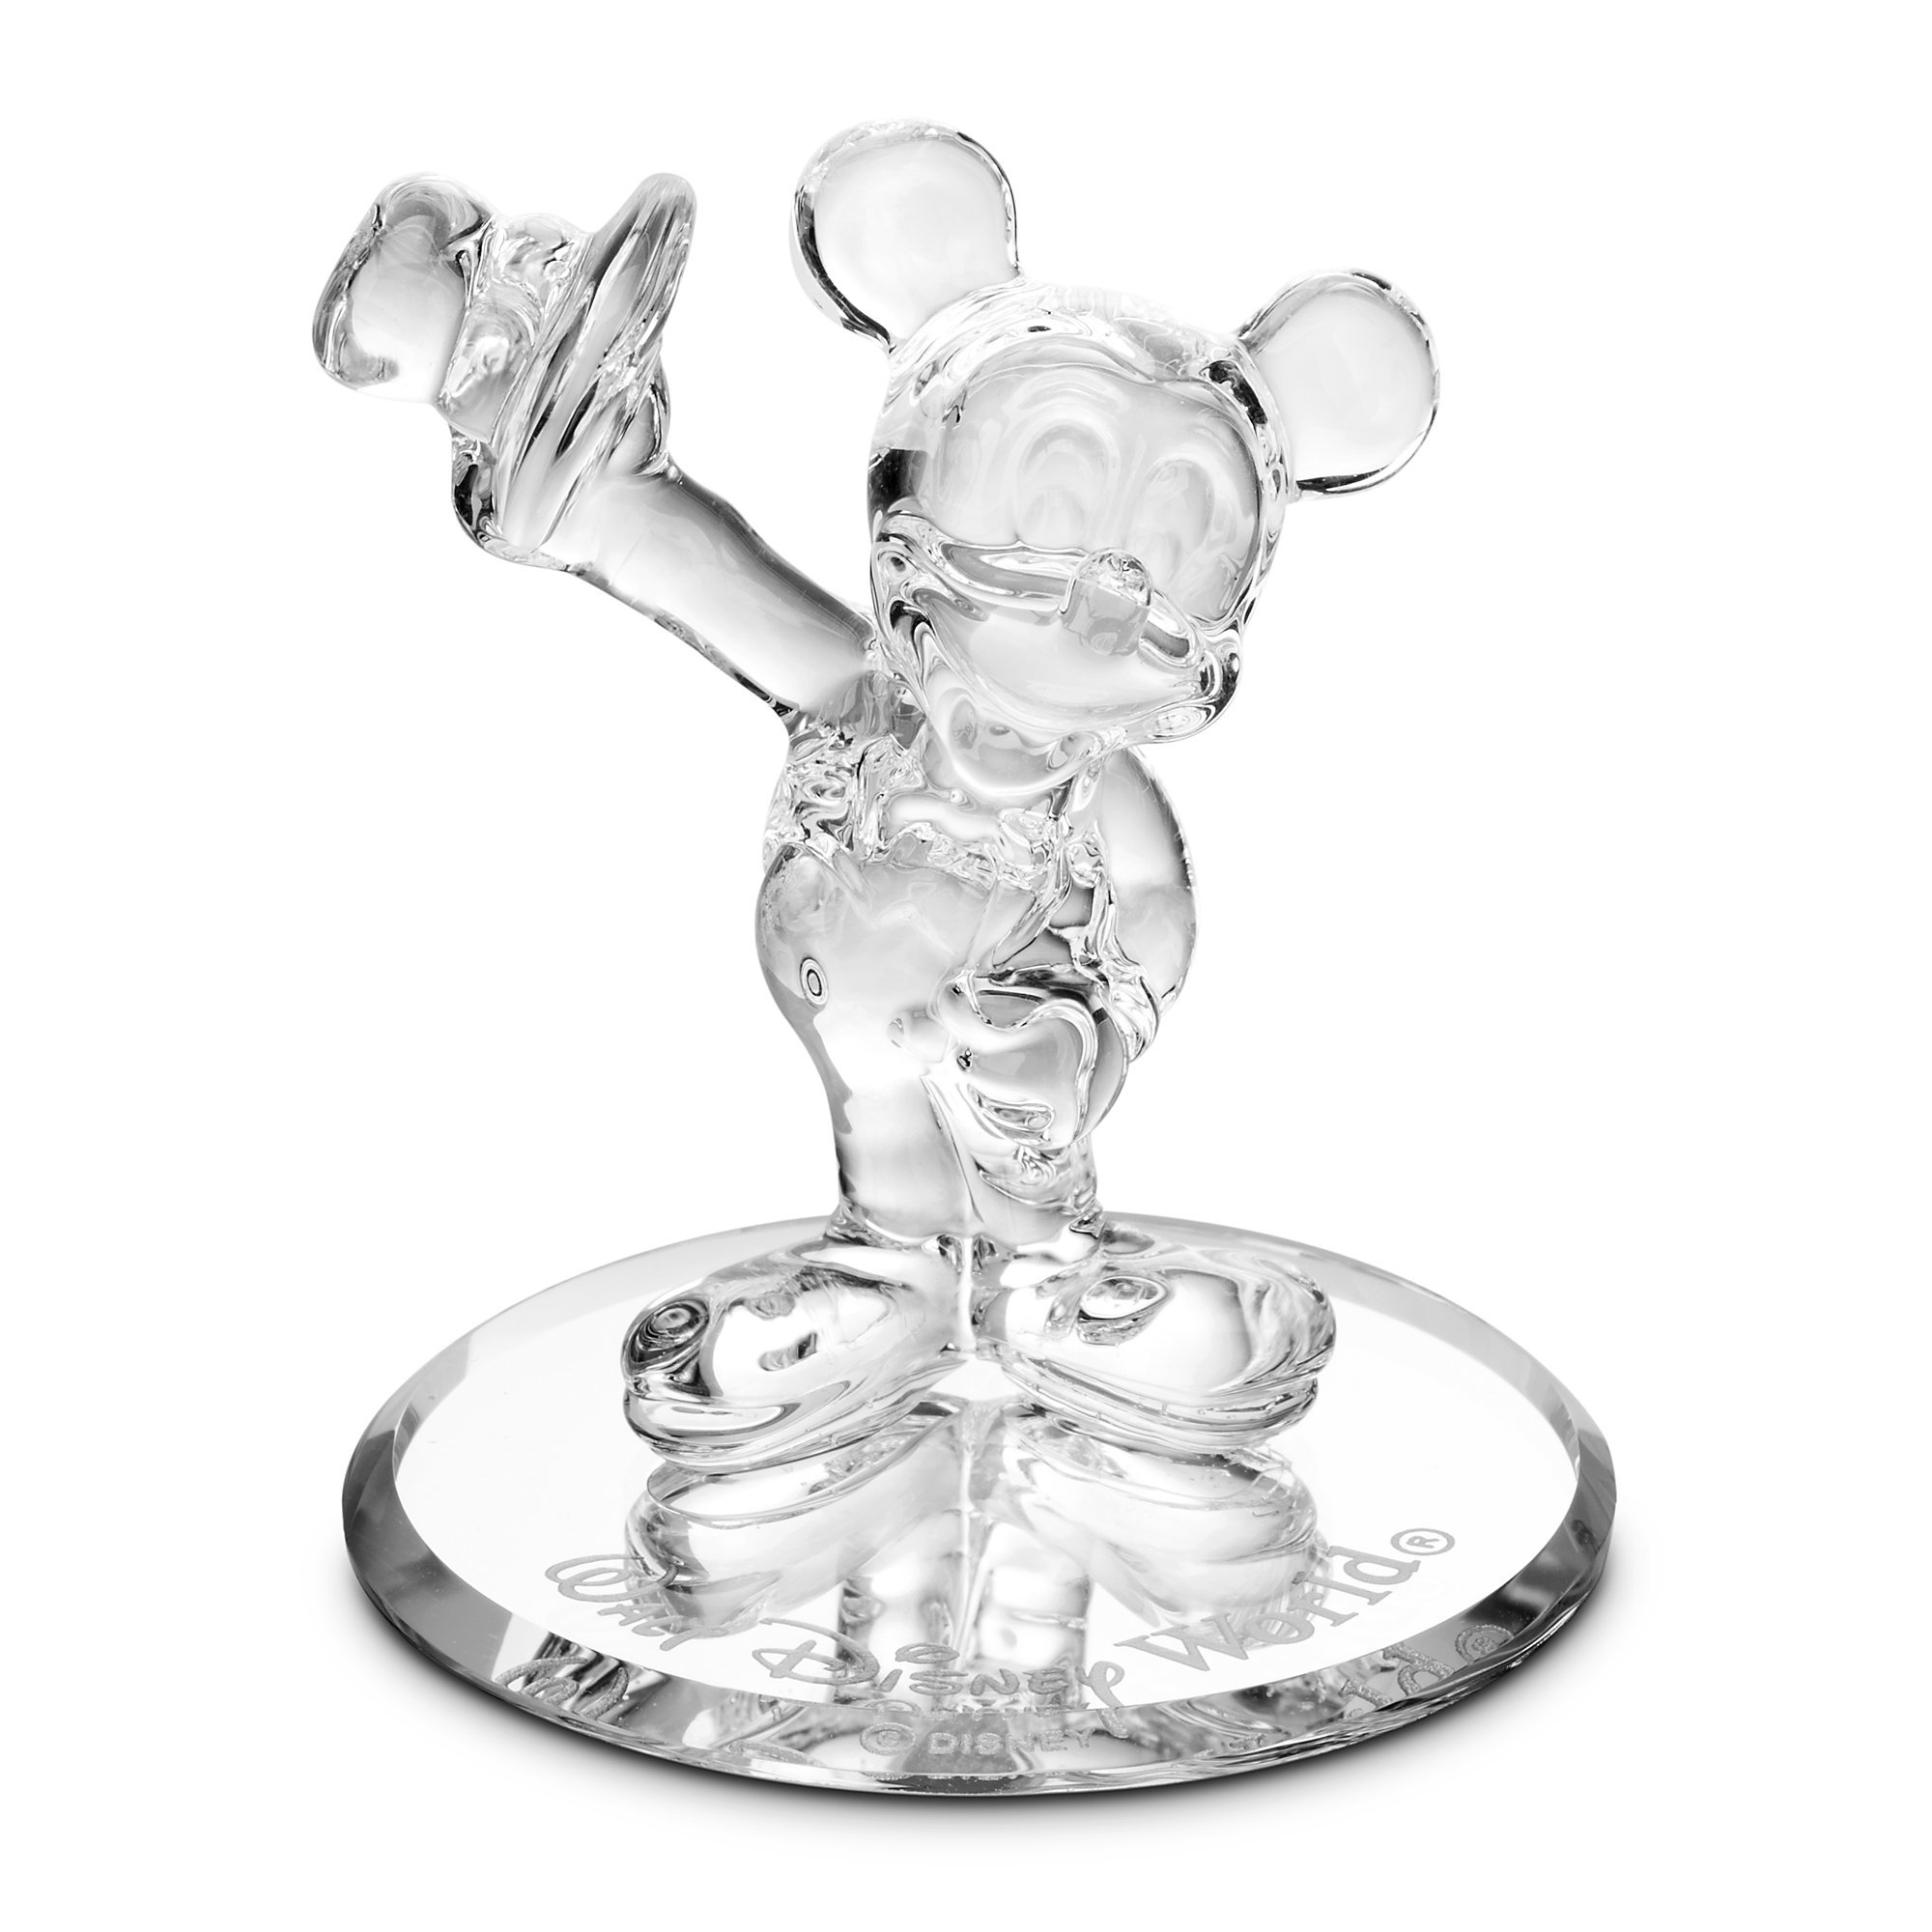 Mickey Mouse Glass Figurine by Arribas - Walt Disney World